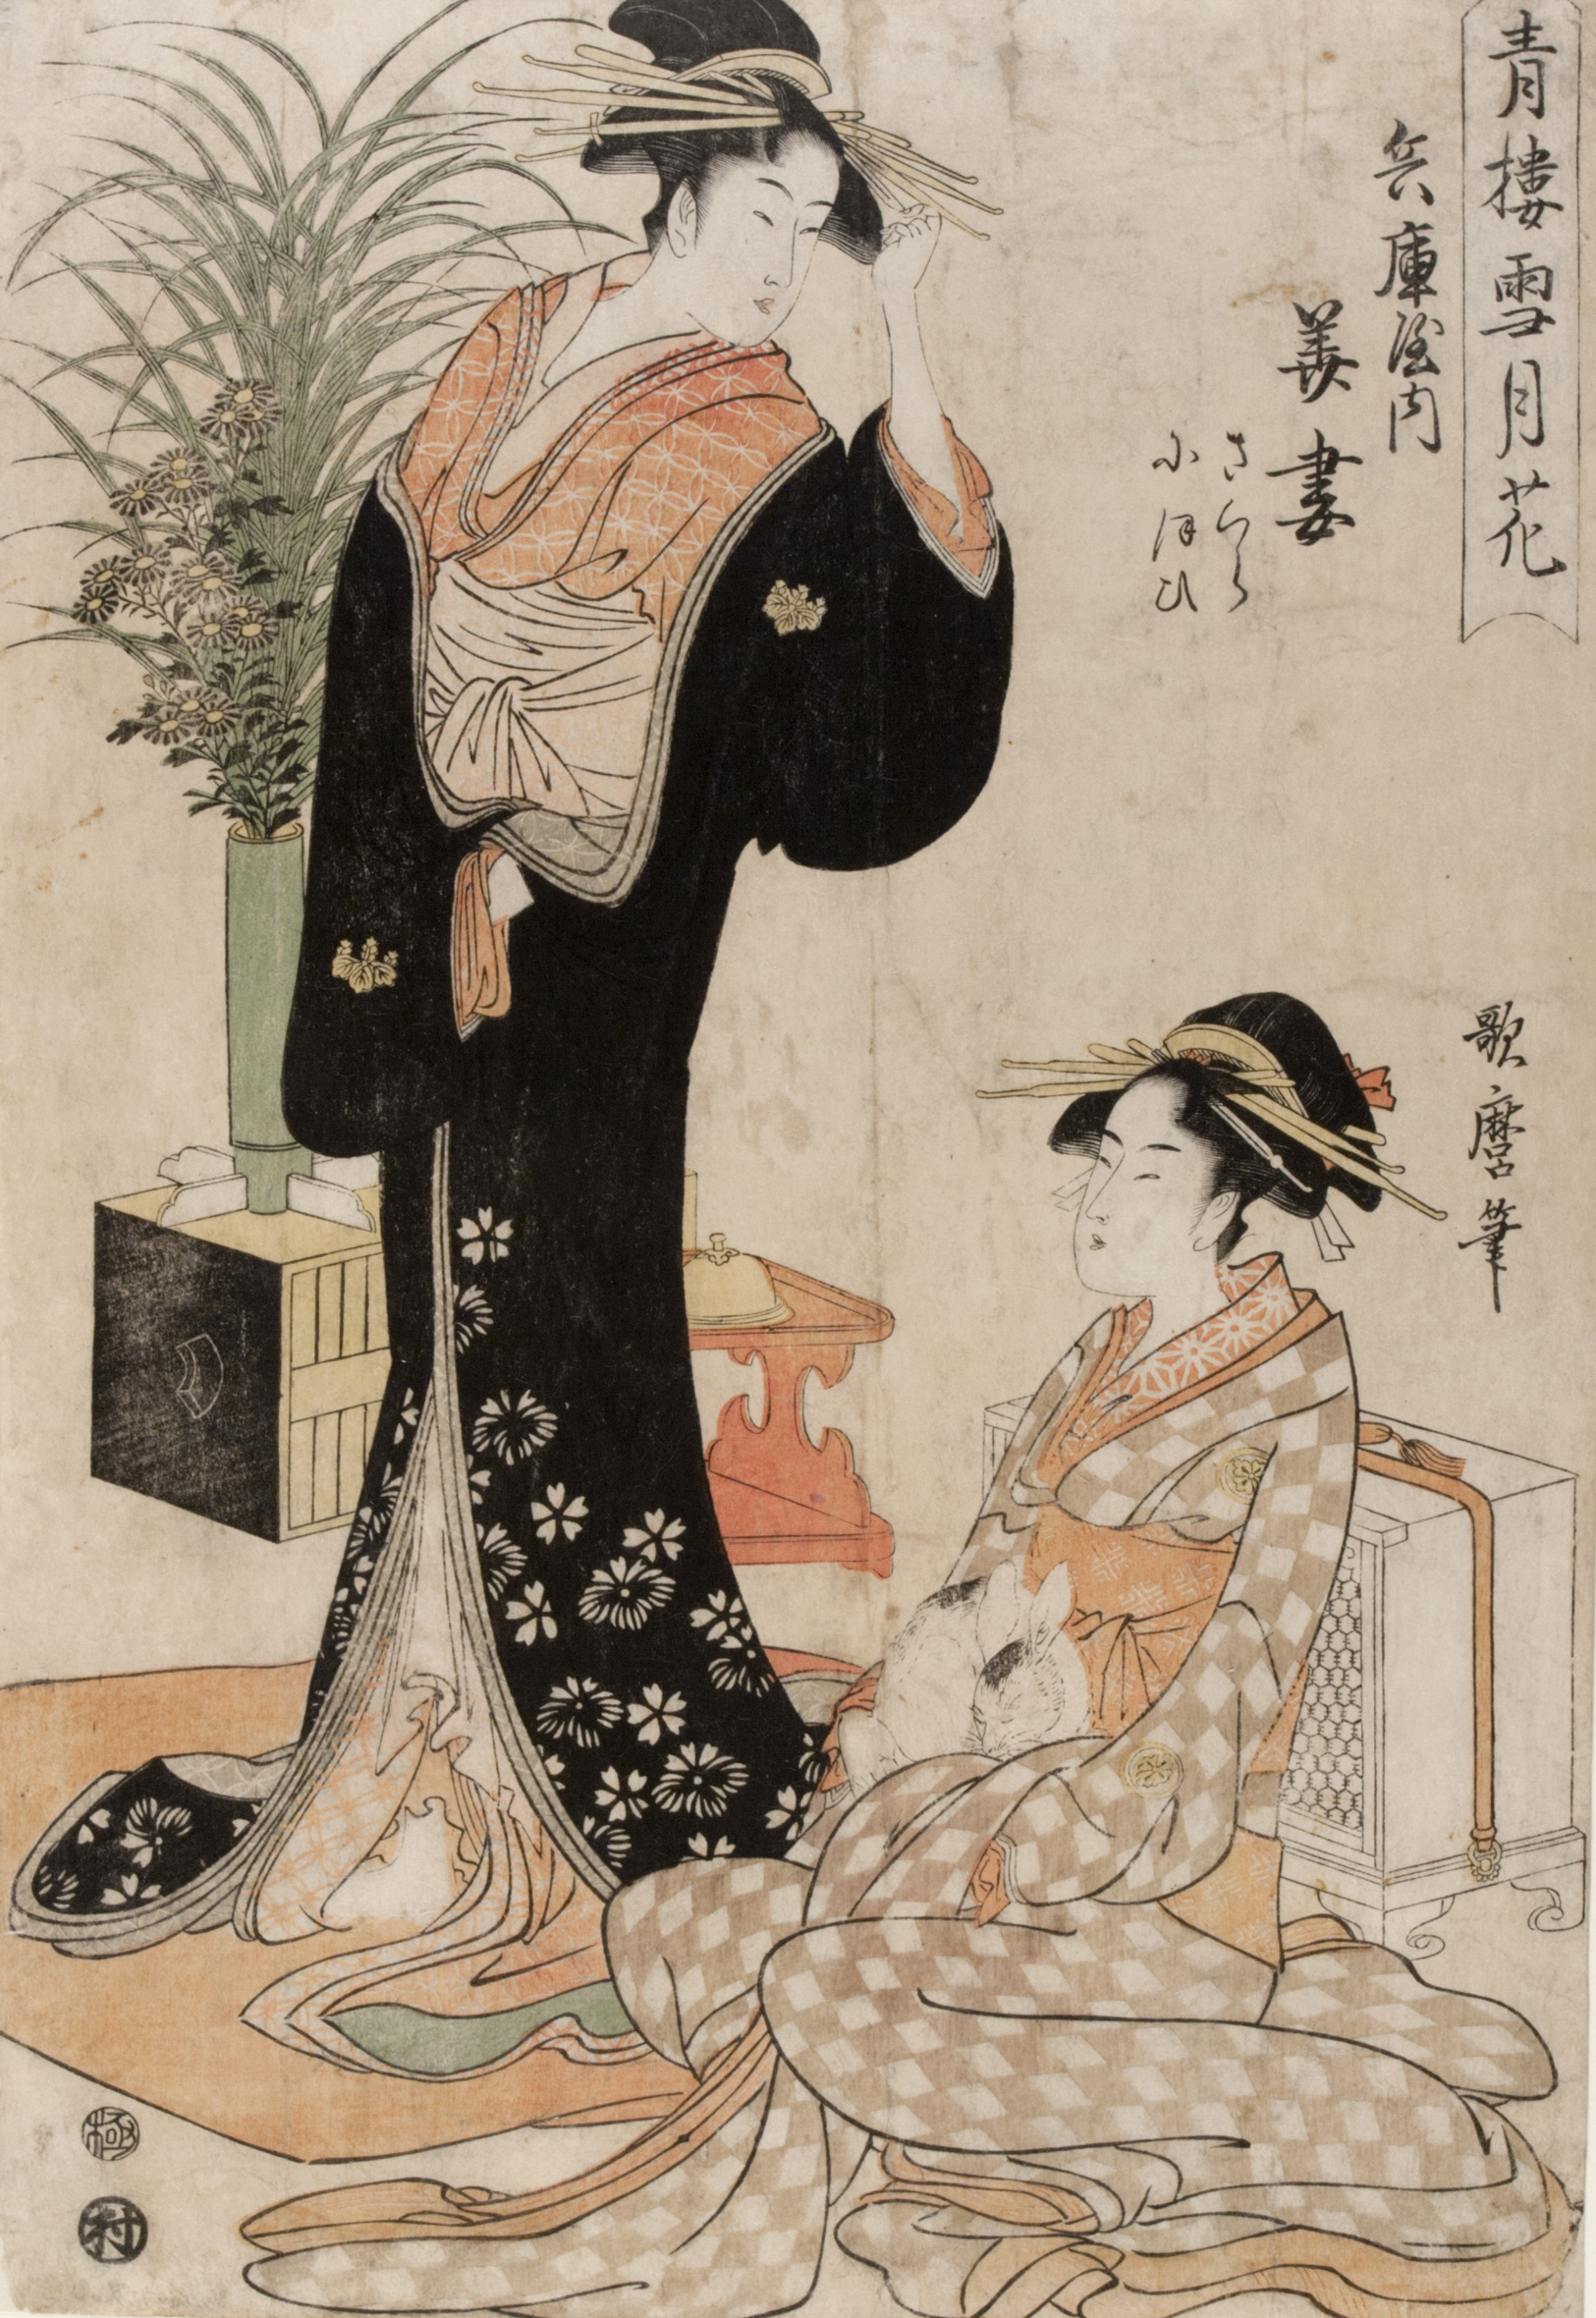 Curtezana Hanazuma din Casa Hyōgoya și însoțitoarea ei cu un iepure by Kitagawa Utamaro - 1793 